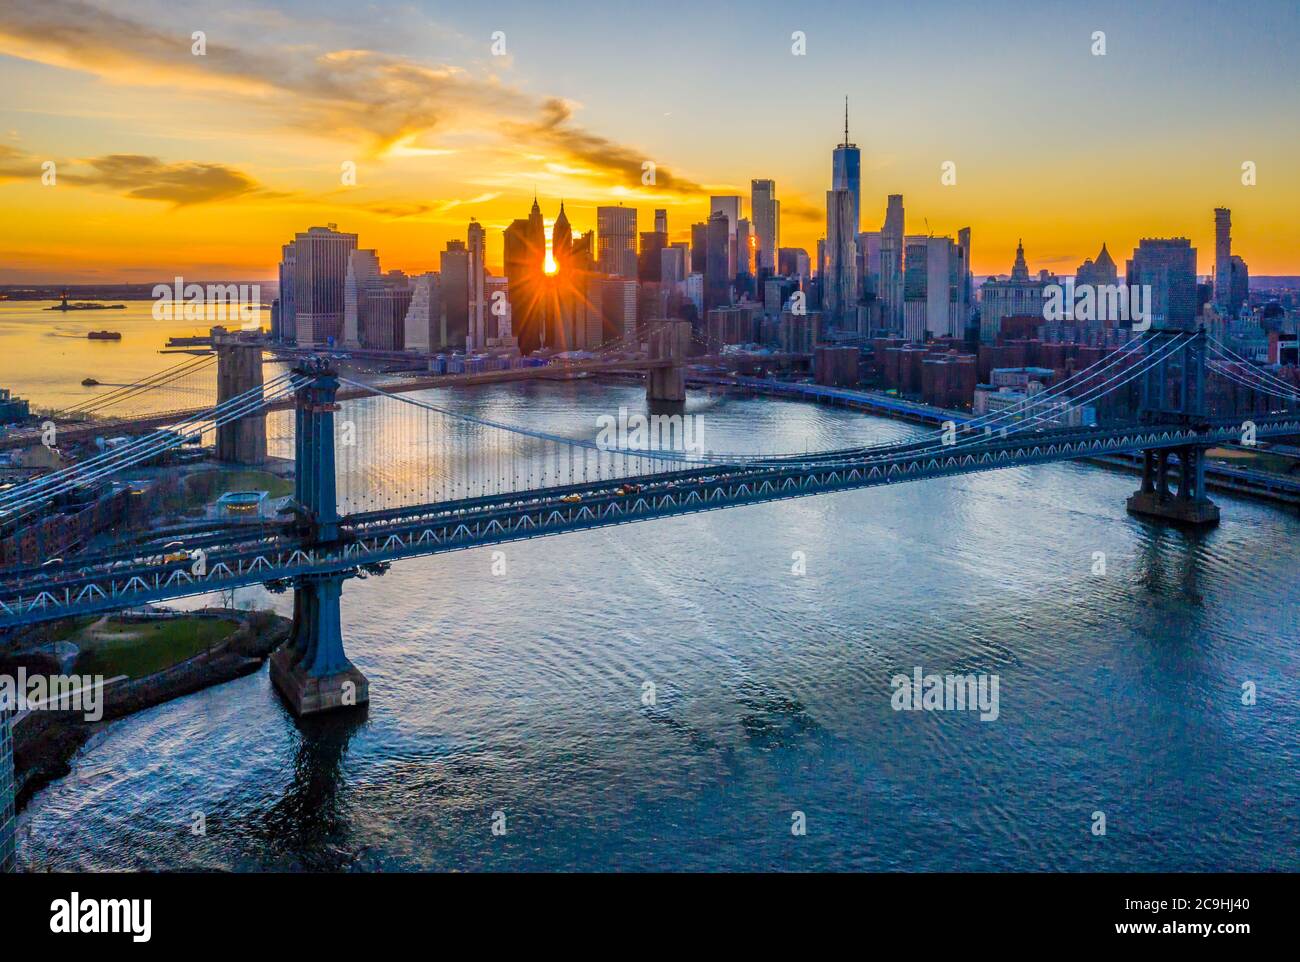 Vue aérienne des ponts de Brooklyn et de Manhattan au coucher du soleil avec les gratte-ciel de Lower Manhattan le long de l'East River, Brooklyn Bridge Park Banque D'Images